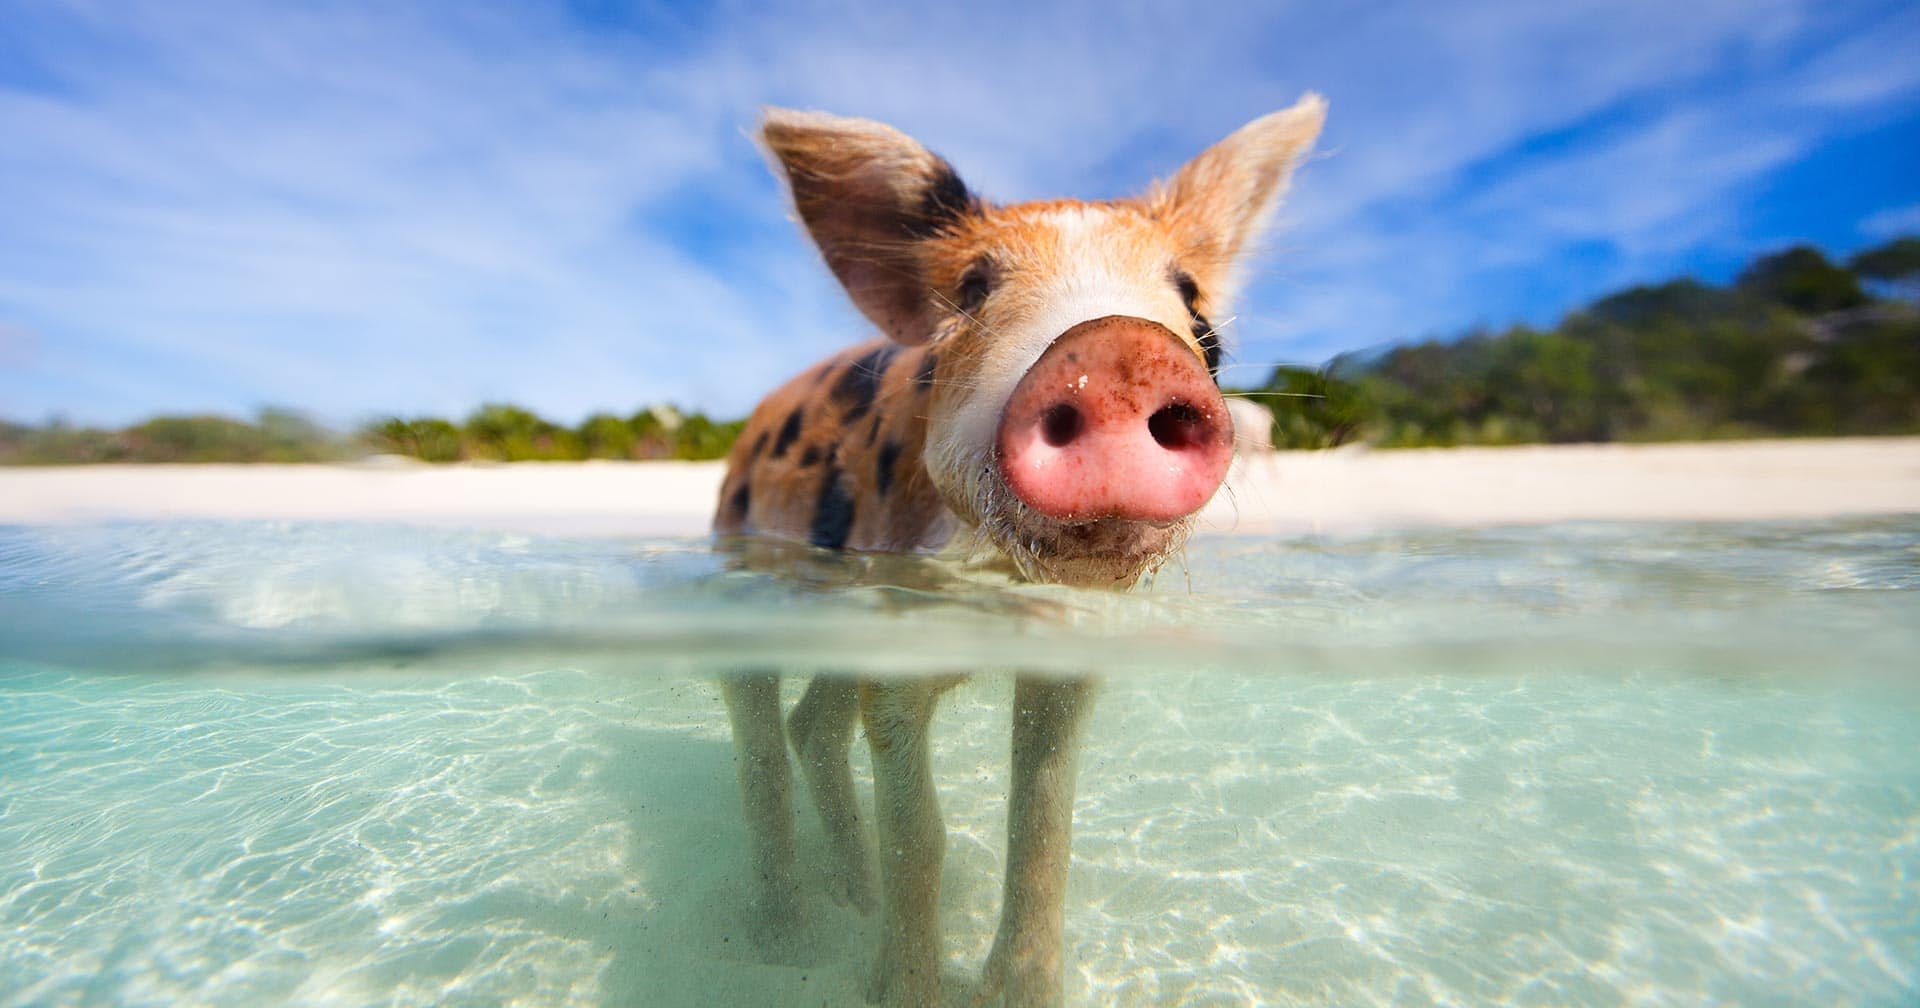 bahamas trip to swim with pigs